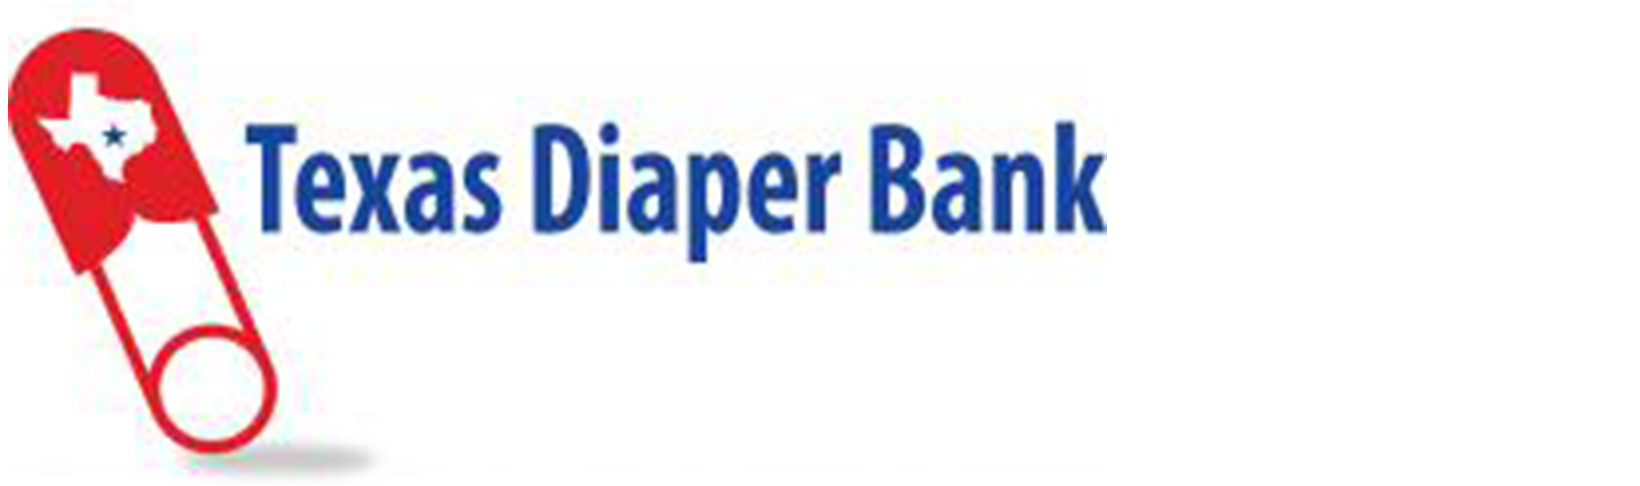 Texas Diaper Bank